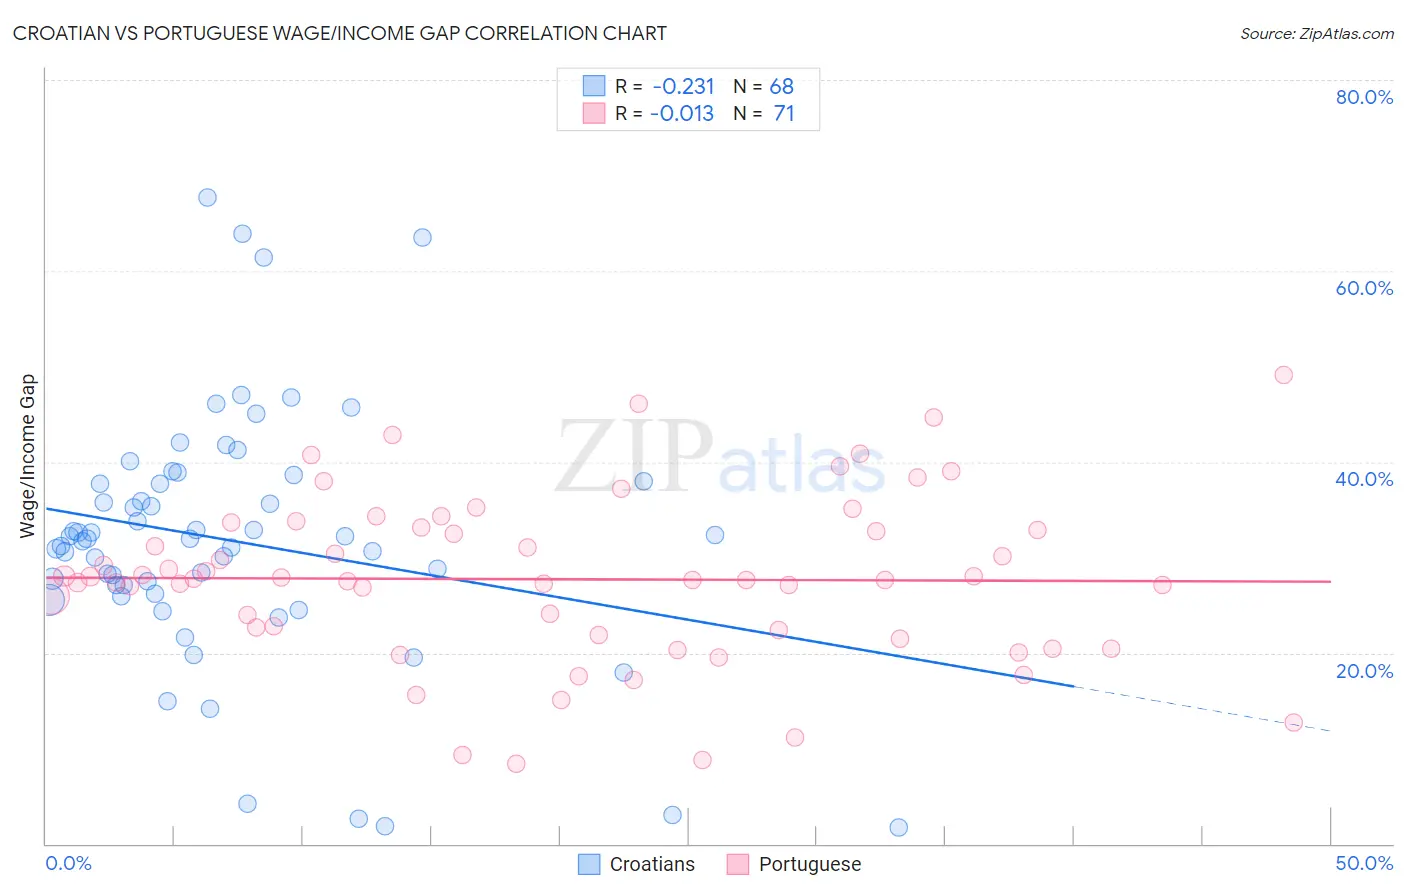 Croatian vs Portuguese Wage/Income Gap